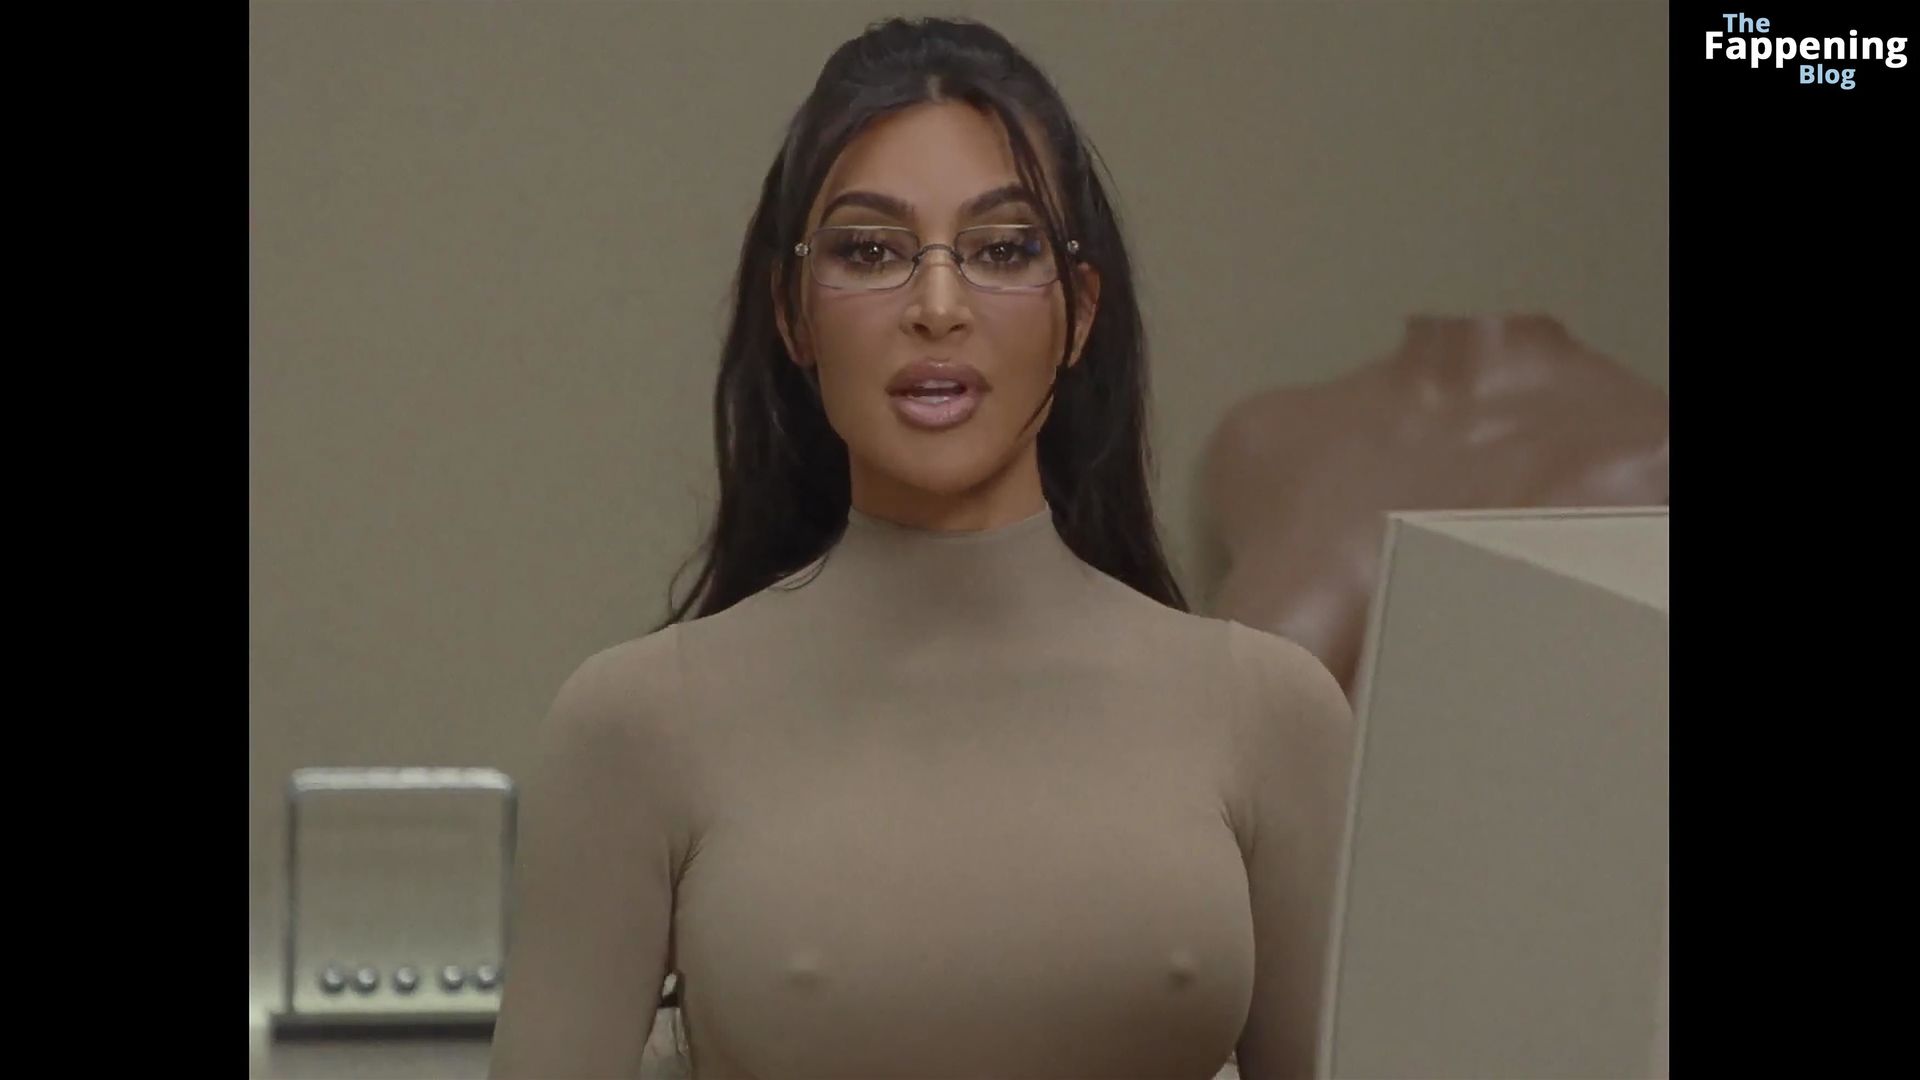 Kim-Kardashian-Sexy-3-The-Fappening-Blog.jpg